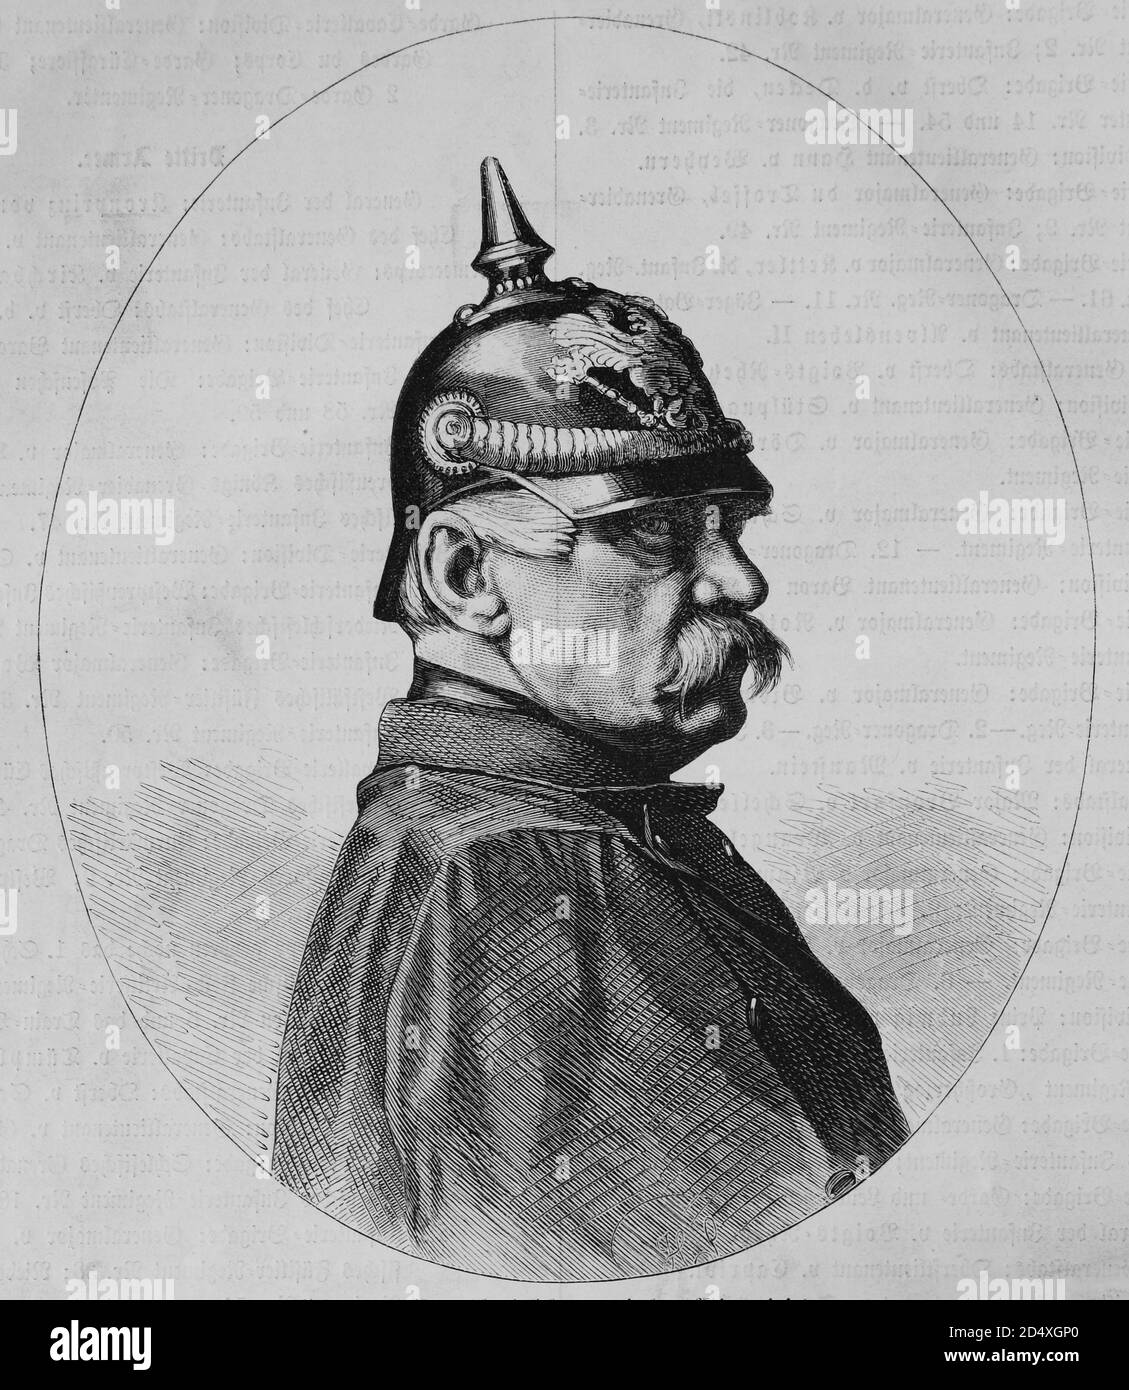 Albrecht Theodor Emil Graf von Roon, 1803-1879, preußischer Feldmarschall, illustrierte Kriegsgeschichte, Deutsch - Französischer Krieg 1870-1871 Stockfoto